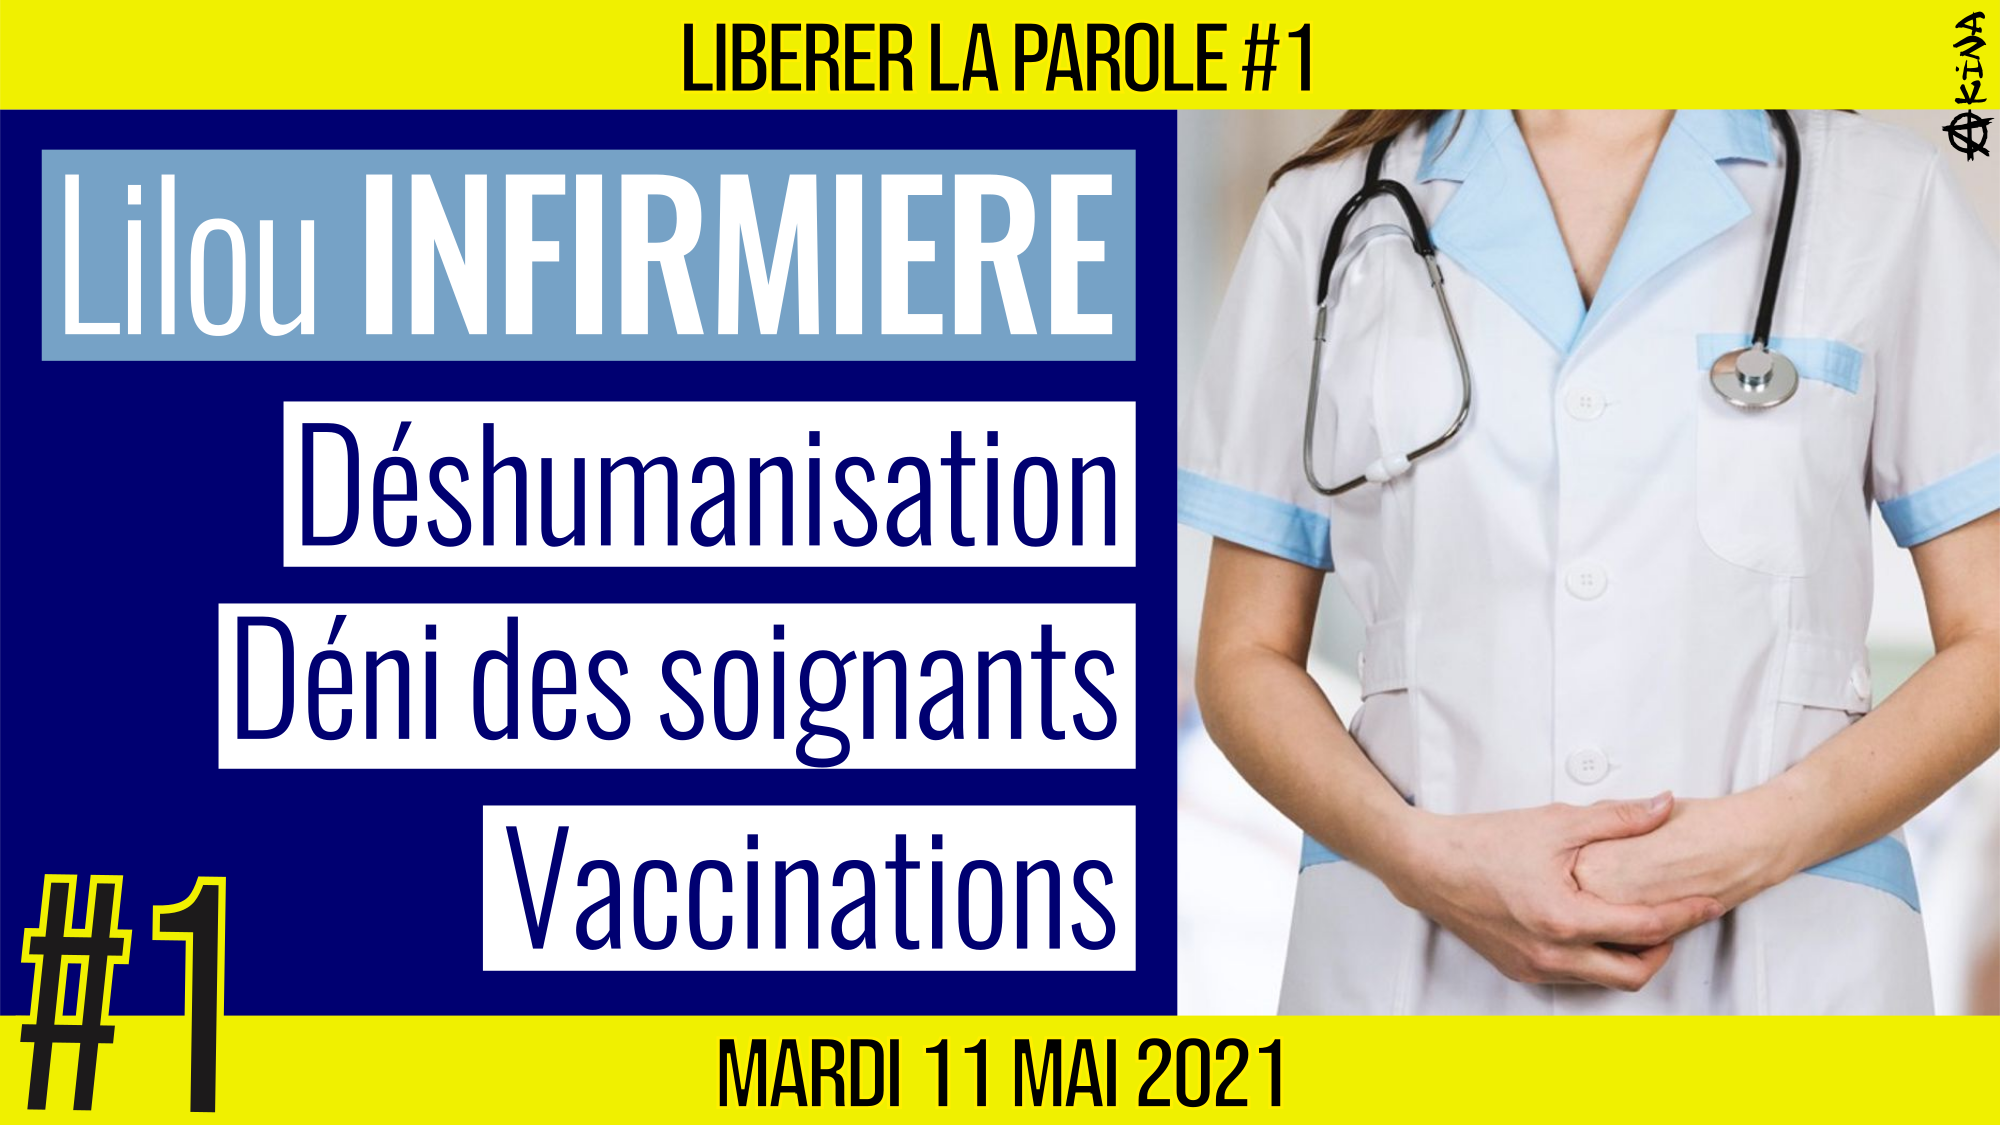 👄 LIBÉRER LA PAROLE #1 🗣 Lilou : Profession Infirmière 🎯 Déshumanisation, Déni des soignants, Vaccins 📆 11-05-2021